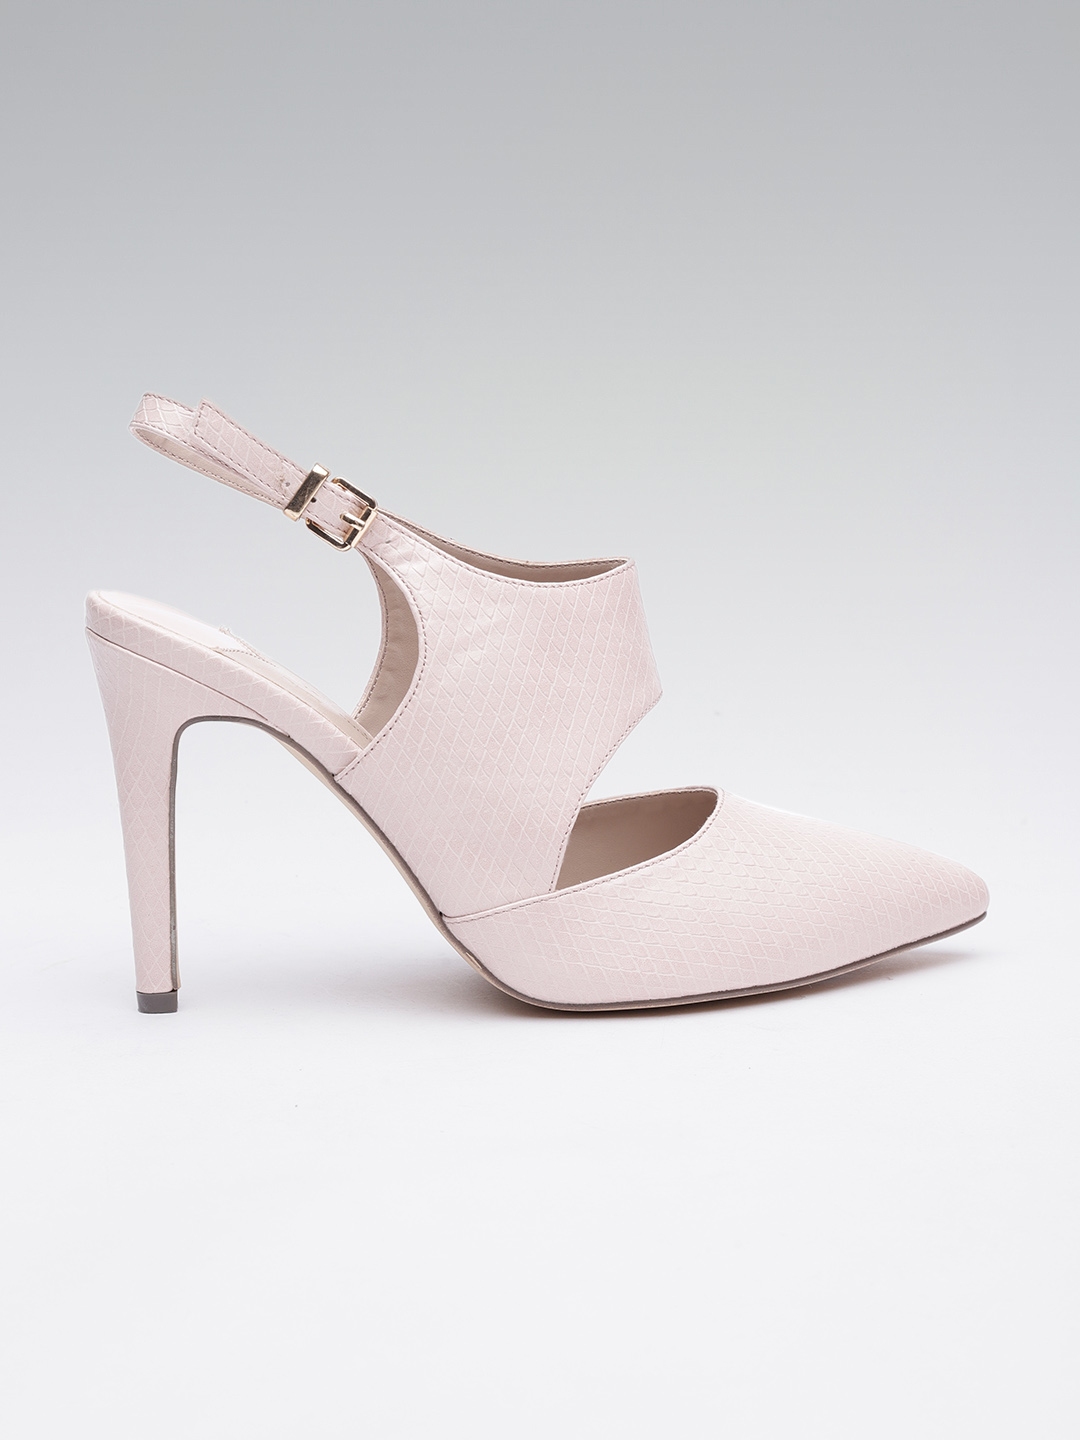 Buy Dorothy Perkins Women Light Pink Textured Pumps Heels For Women 7258242 Myntra 2206